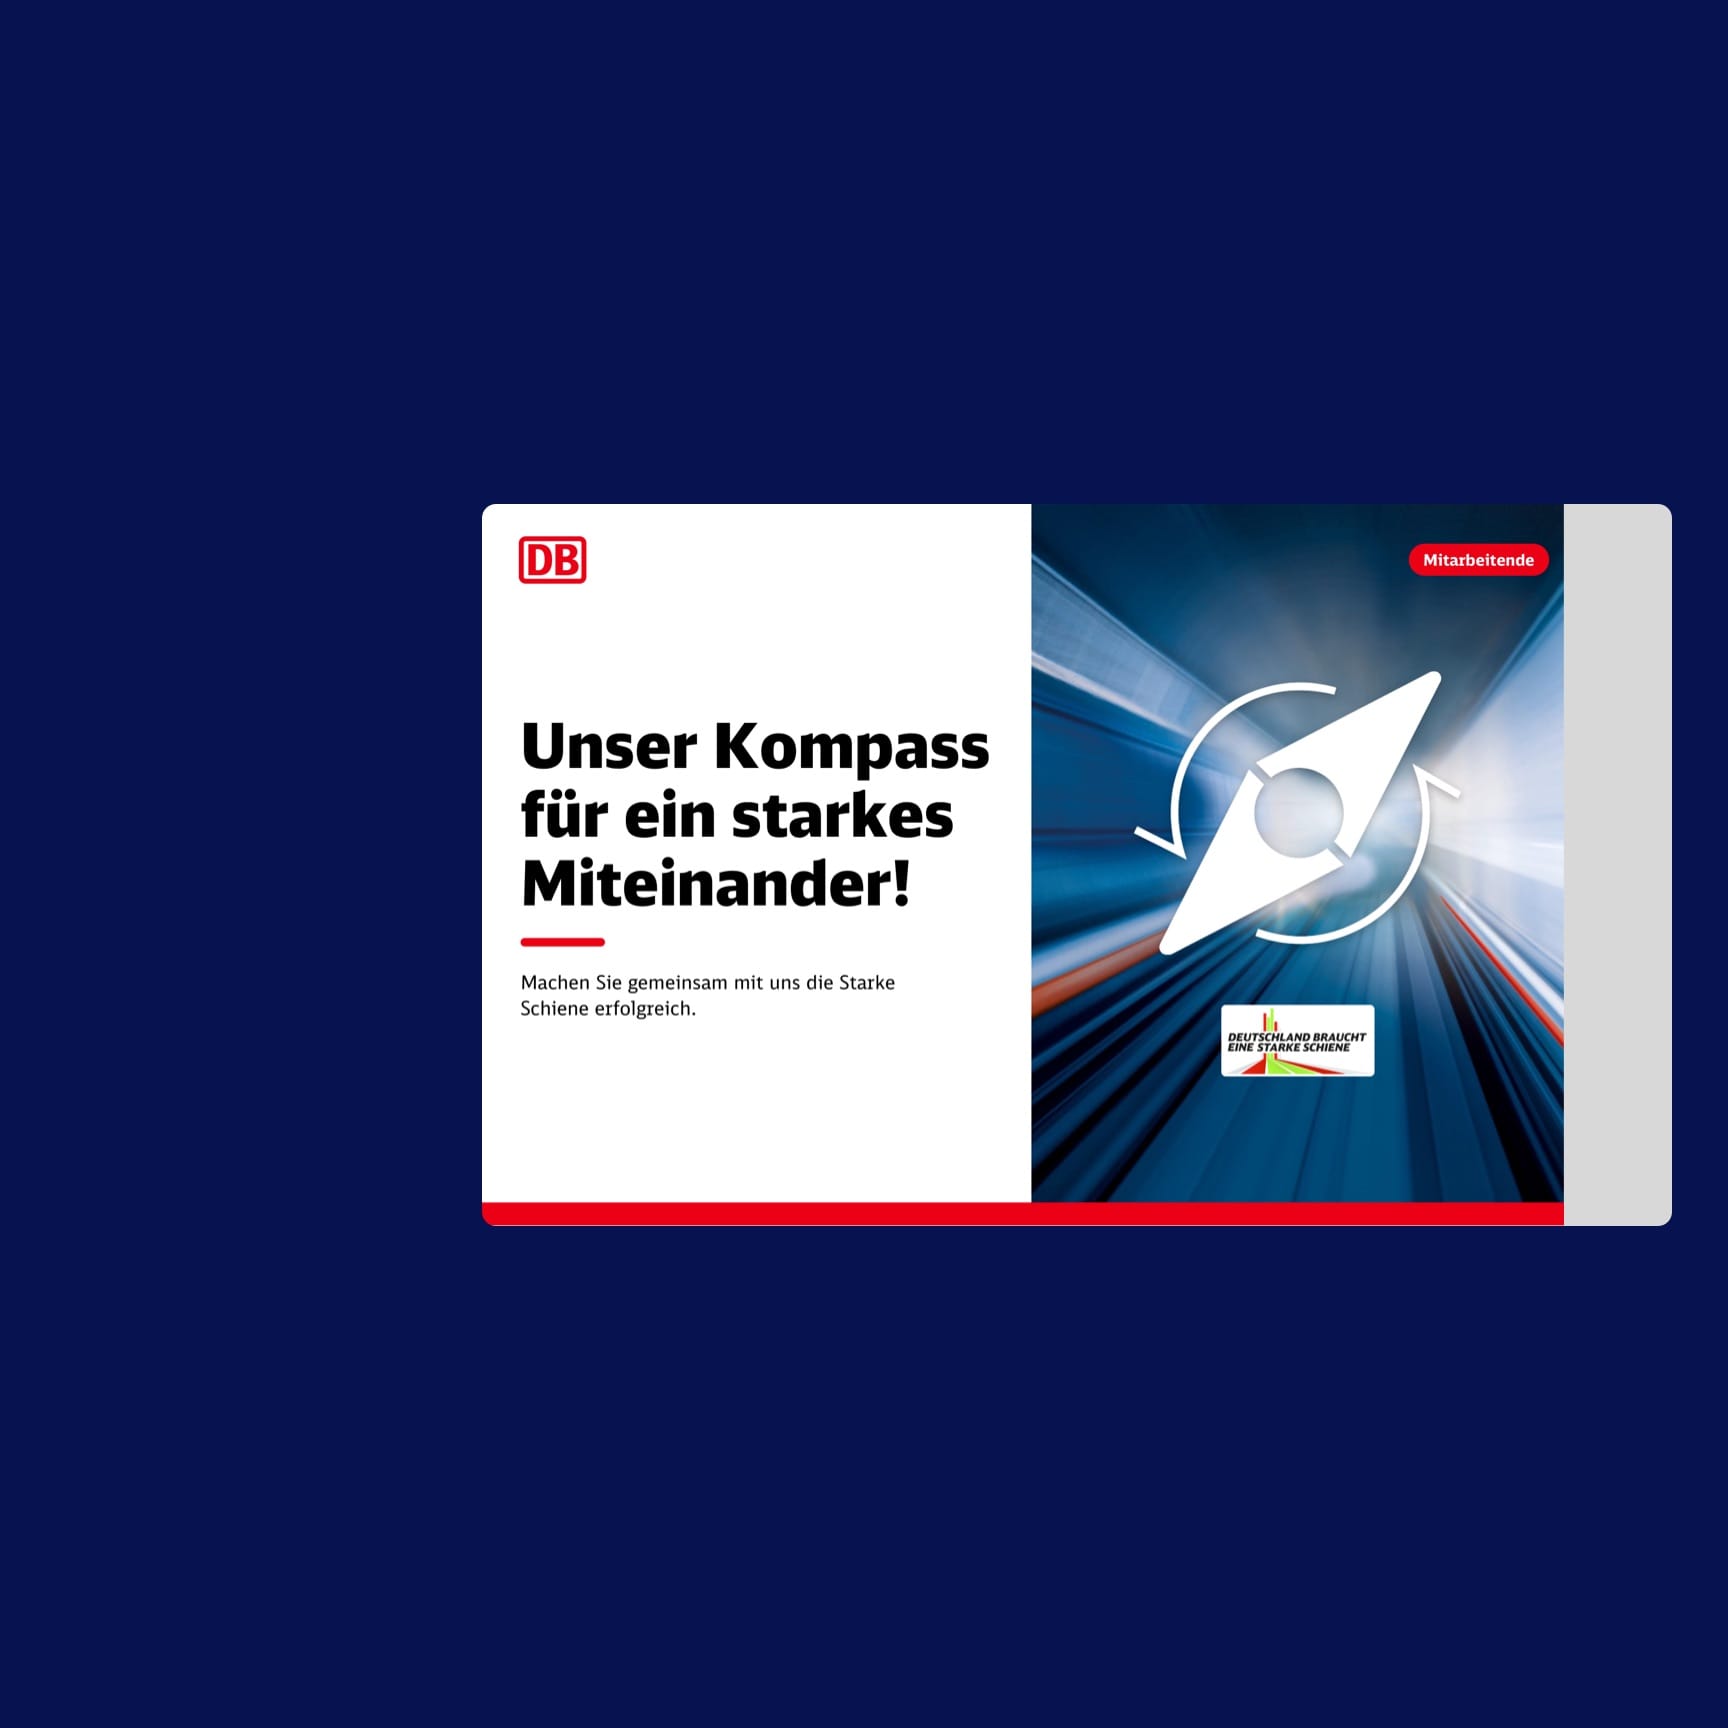 Deutsche Bahn Digital Signage Entwicklung